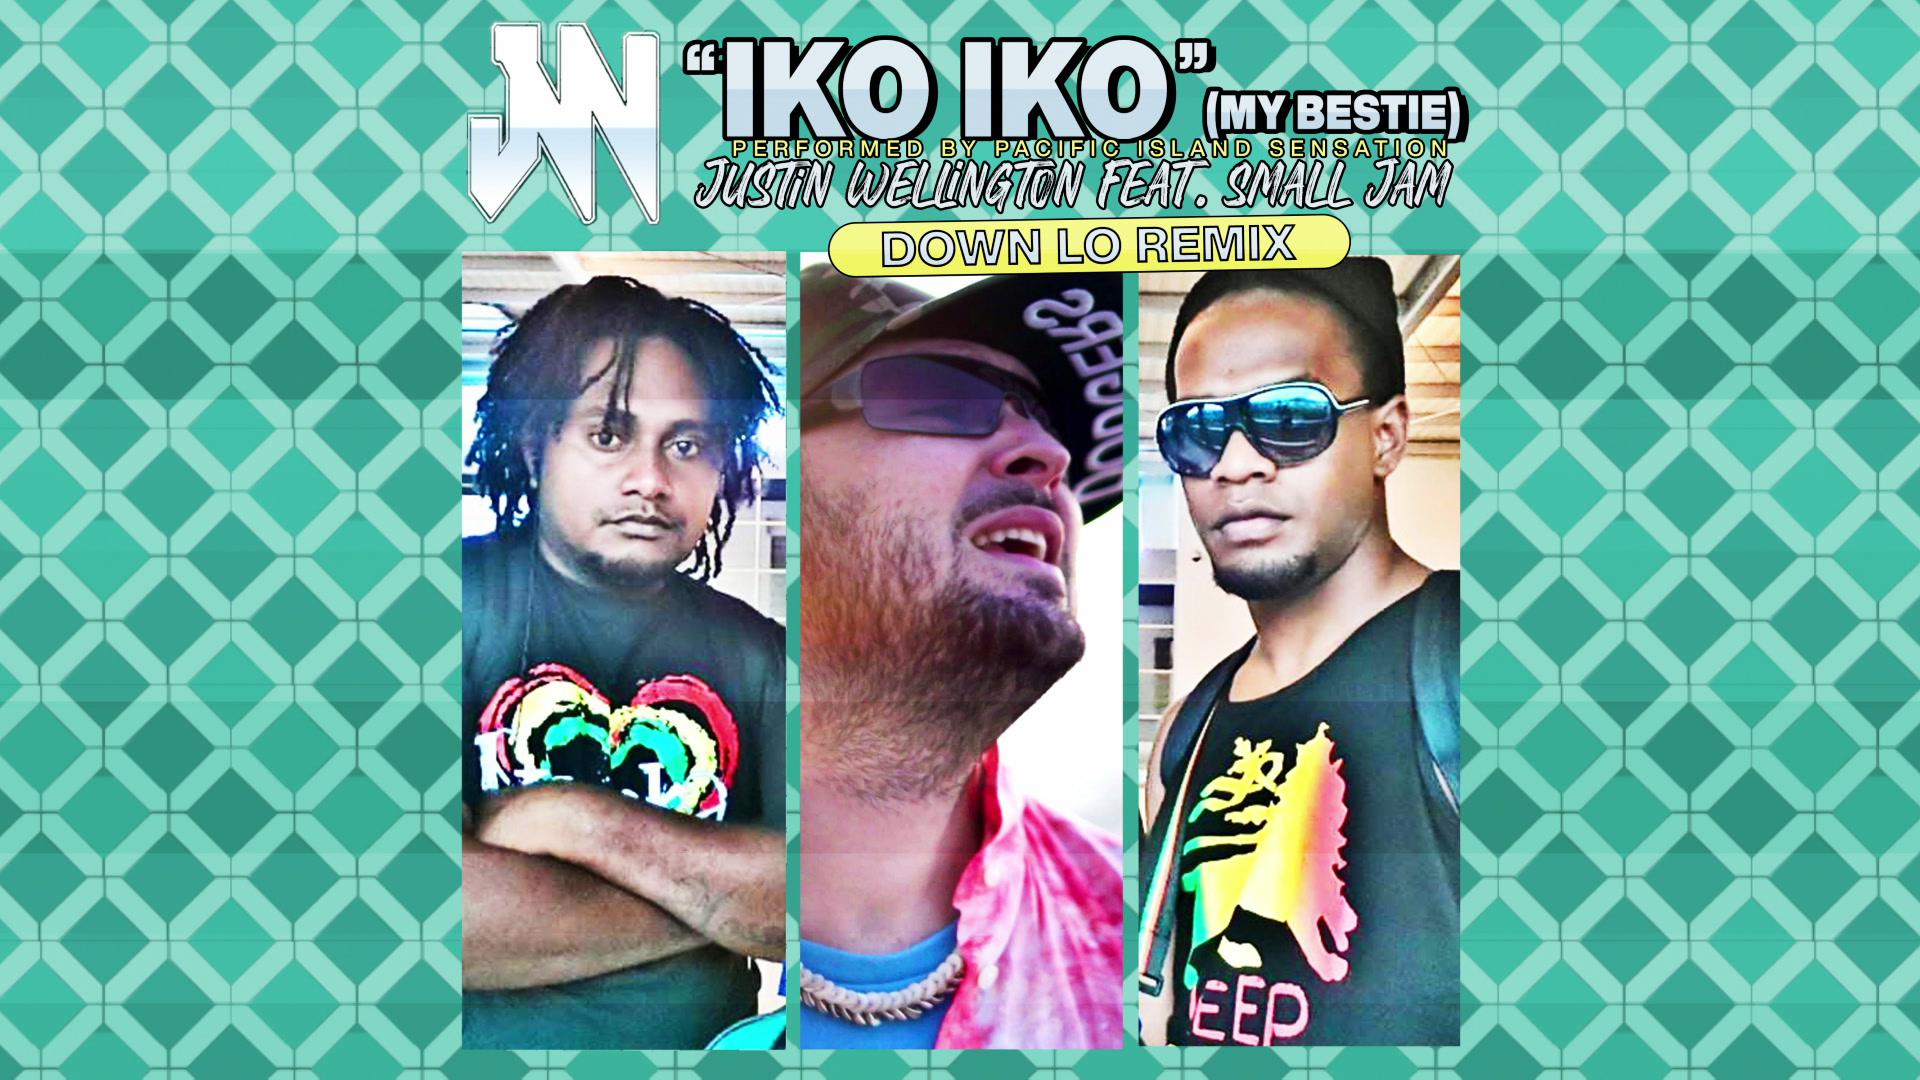 Justin Wellington - Iko Iko (My Bestie) (Down Lo Remix - Audio)